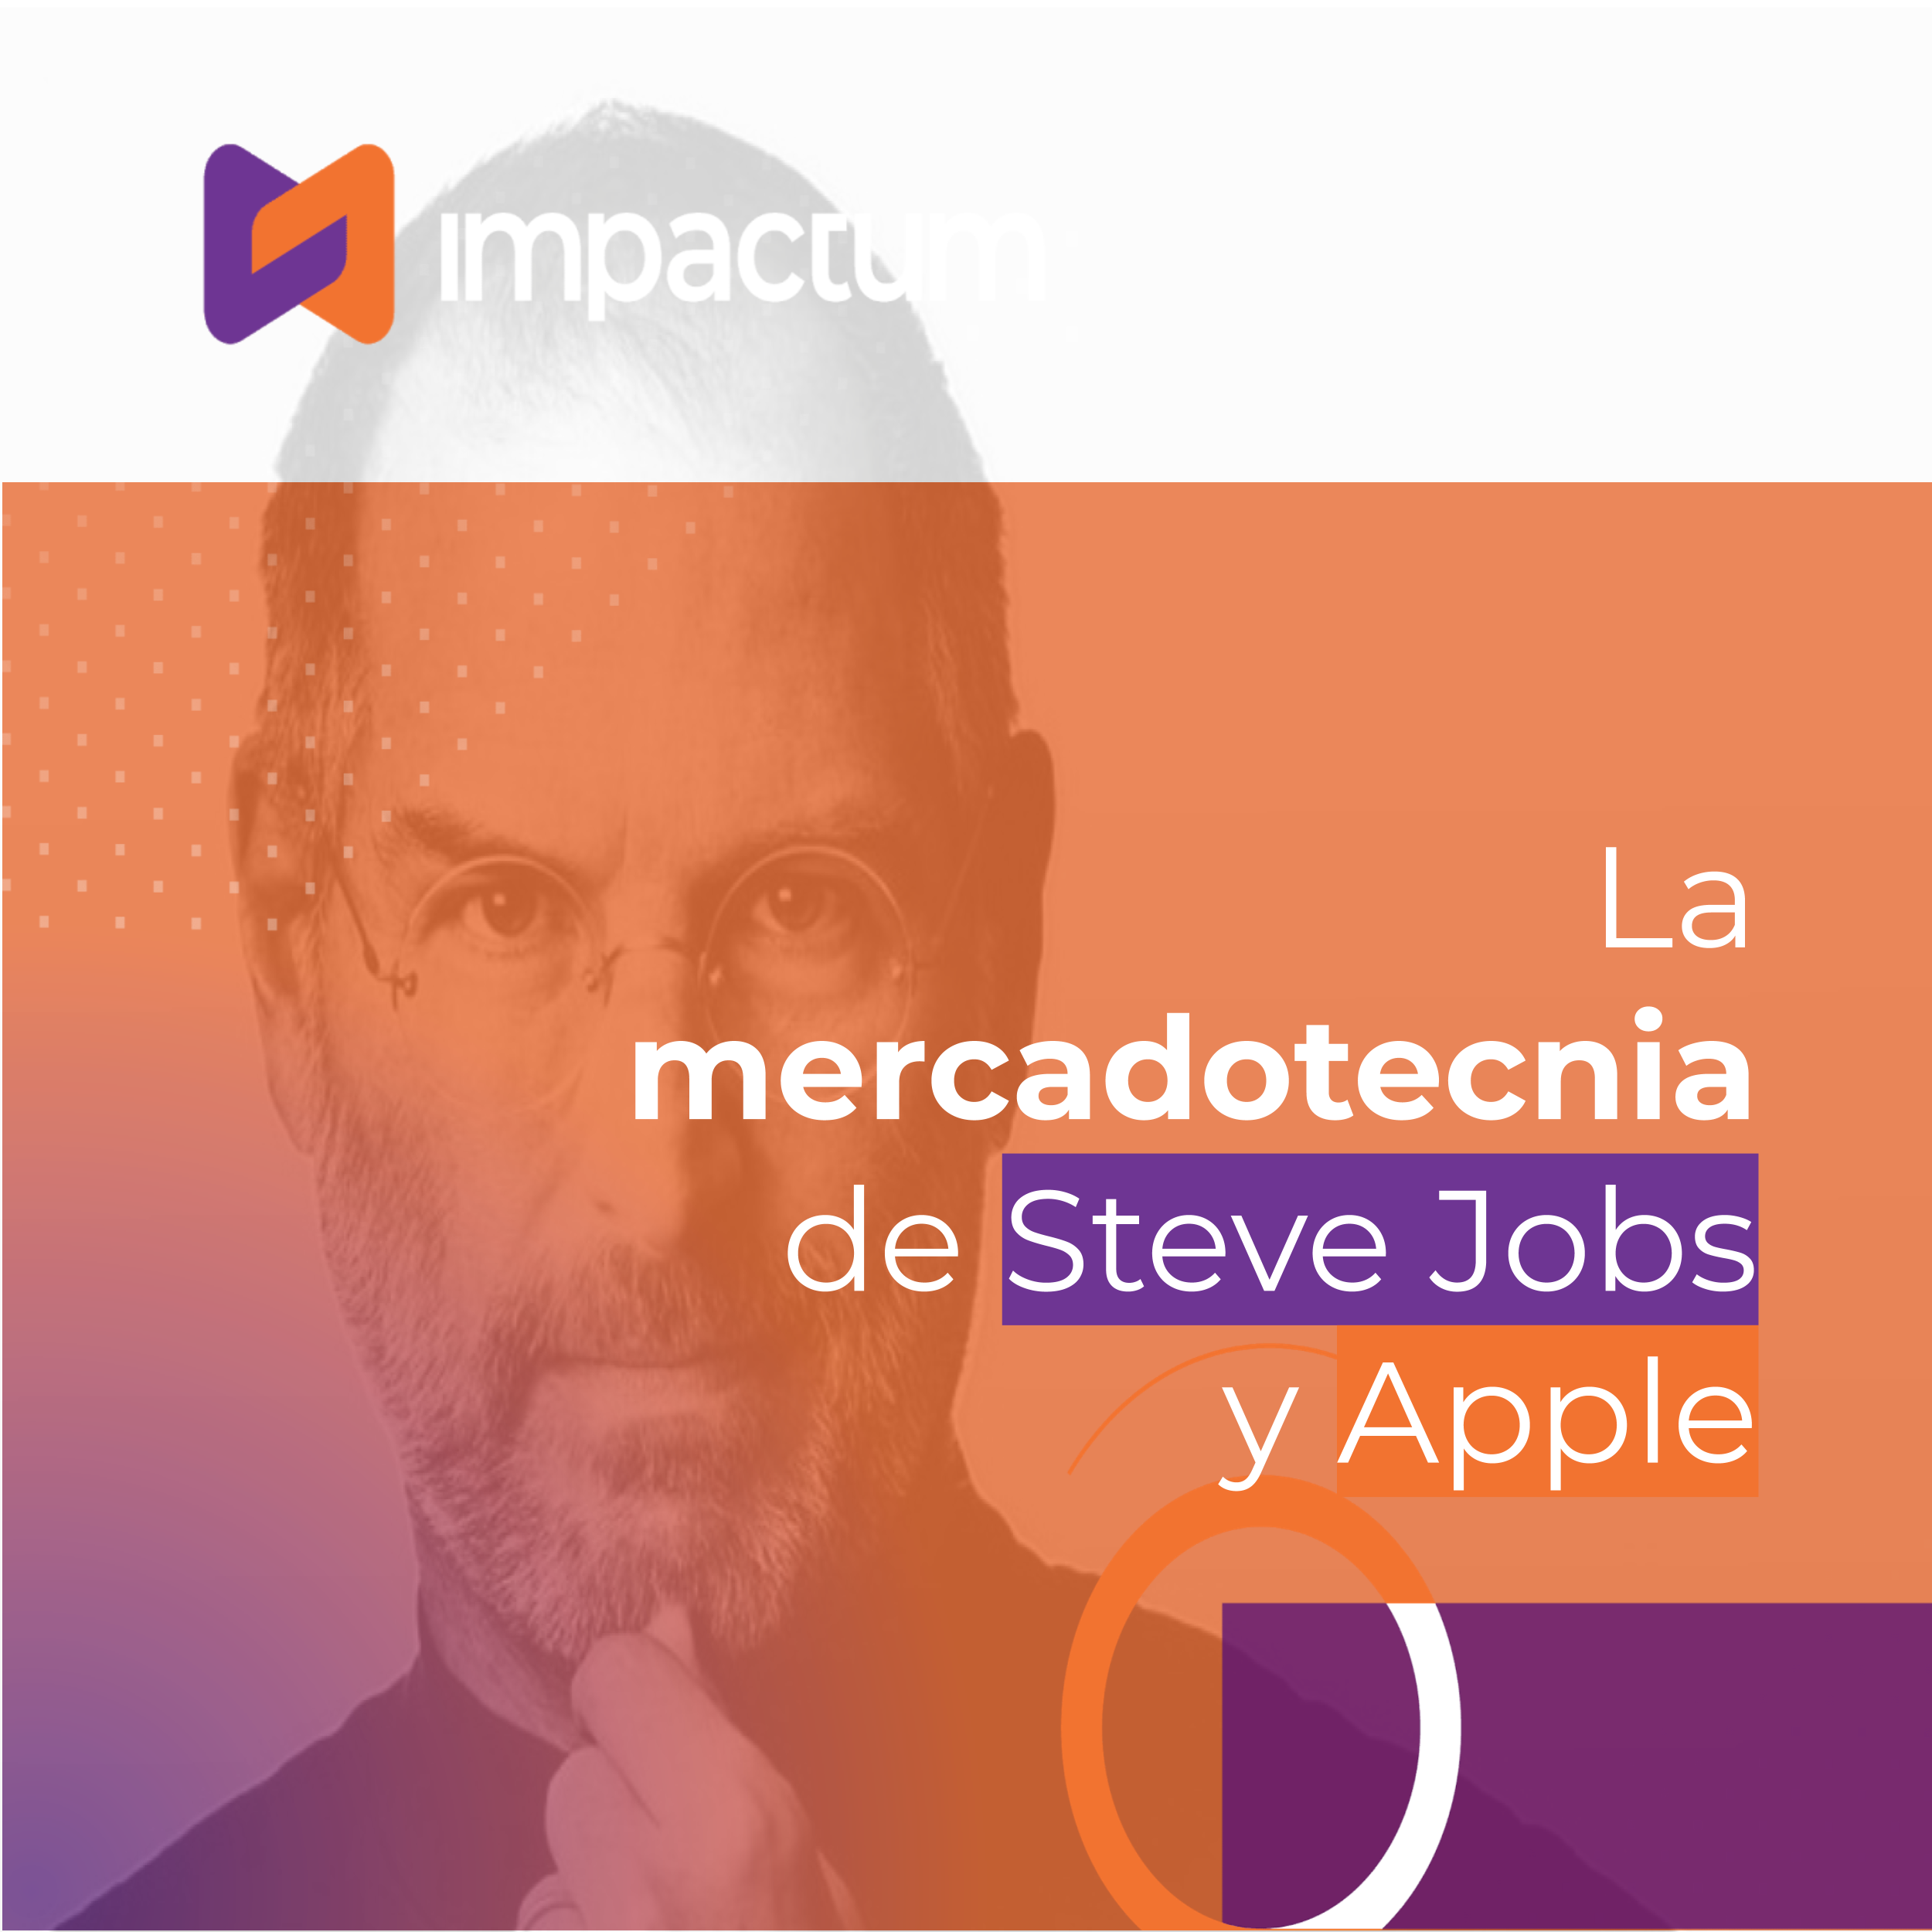 La mercadotecnia de Steve Jobs y Apple